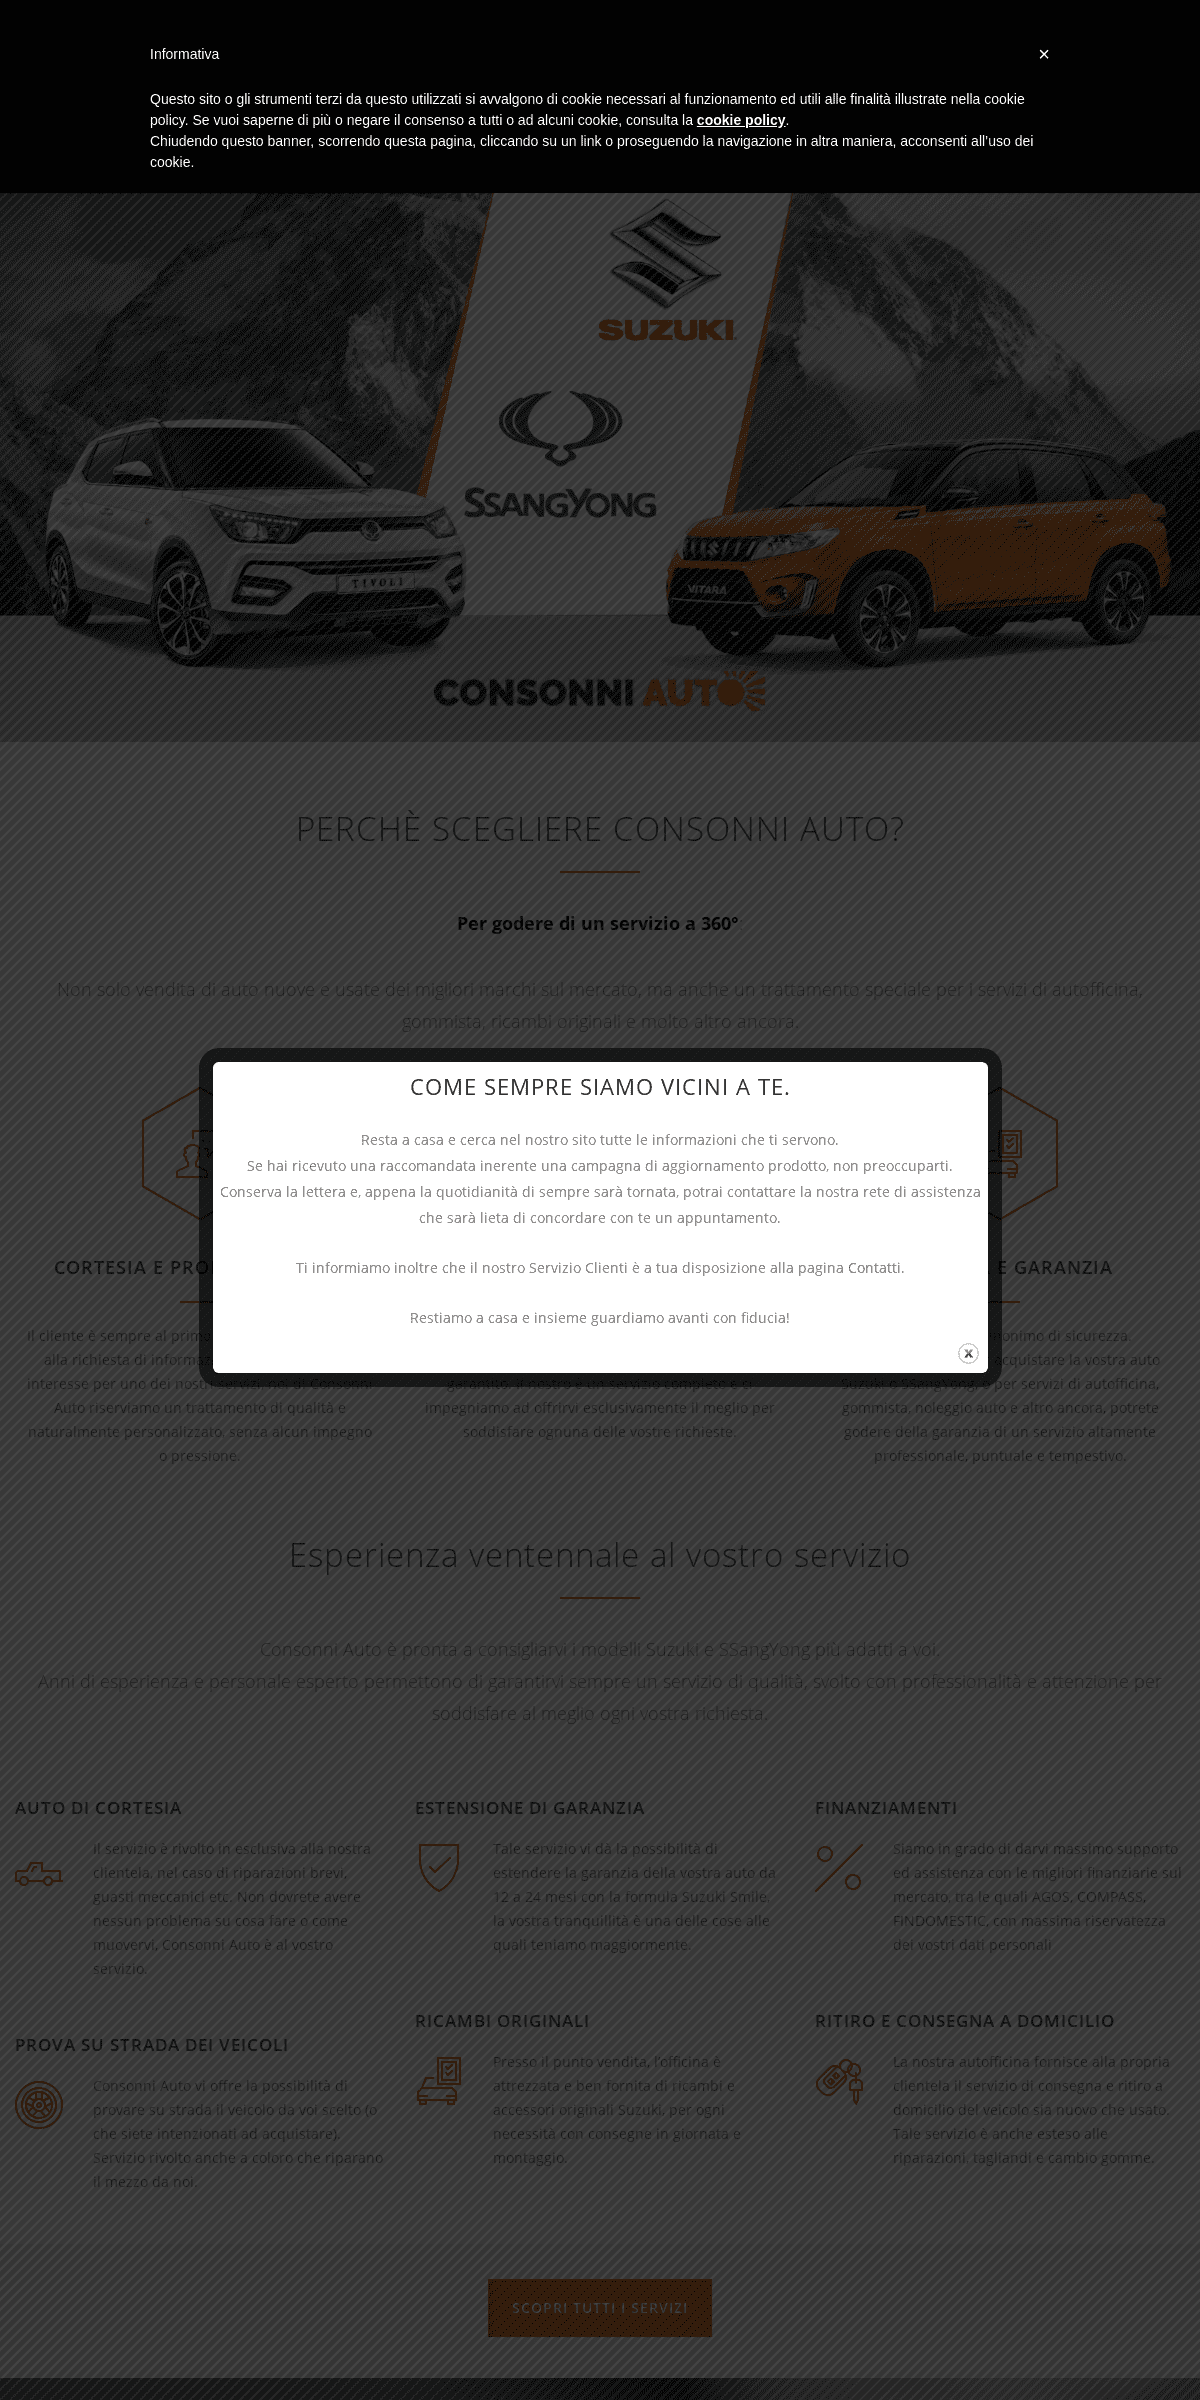 A complete backup of consonniauto.com